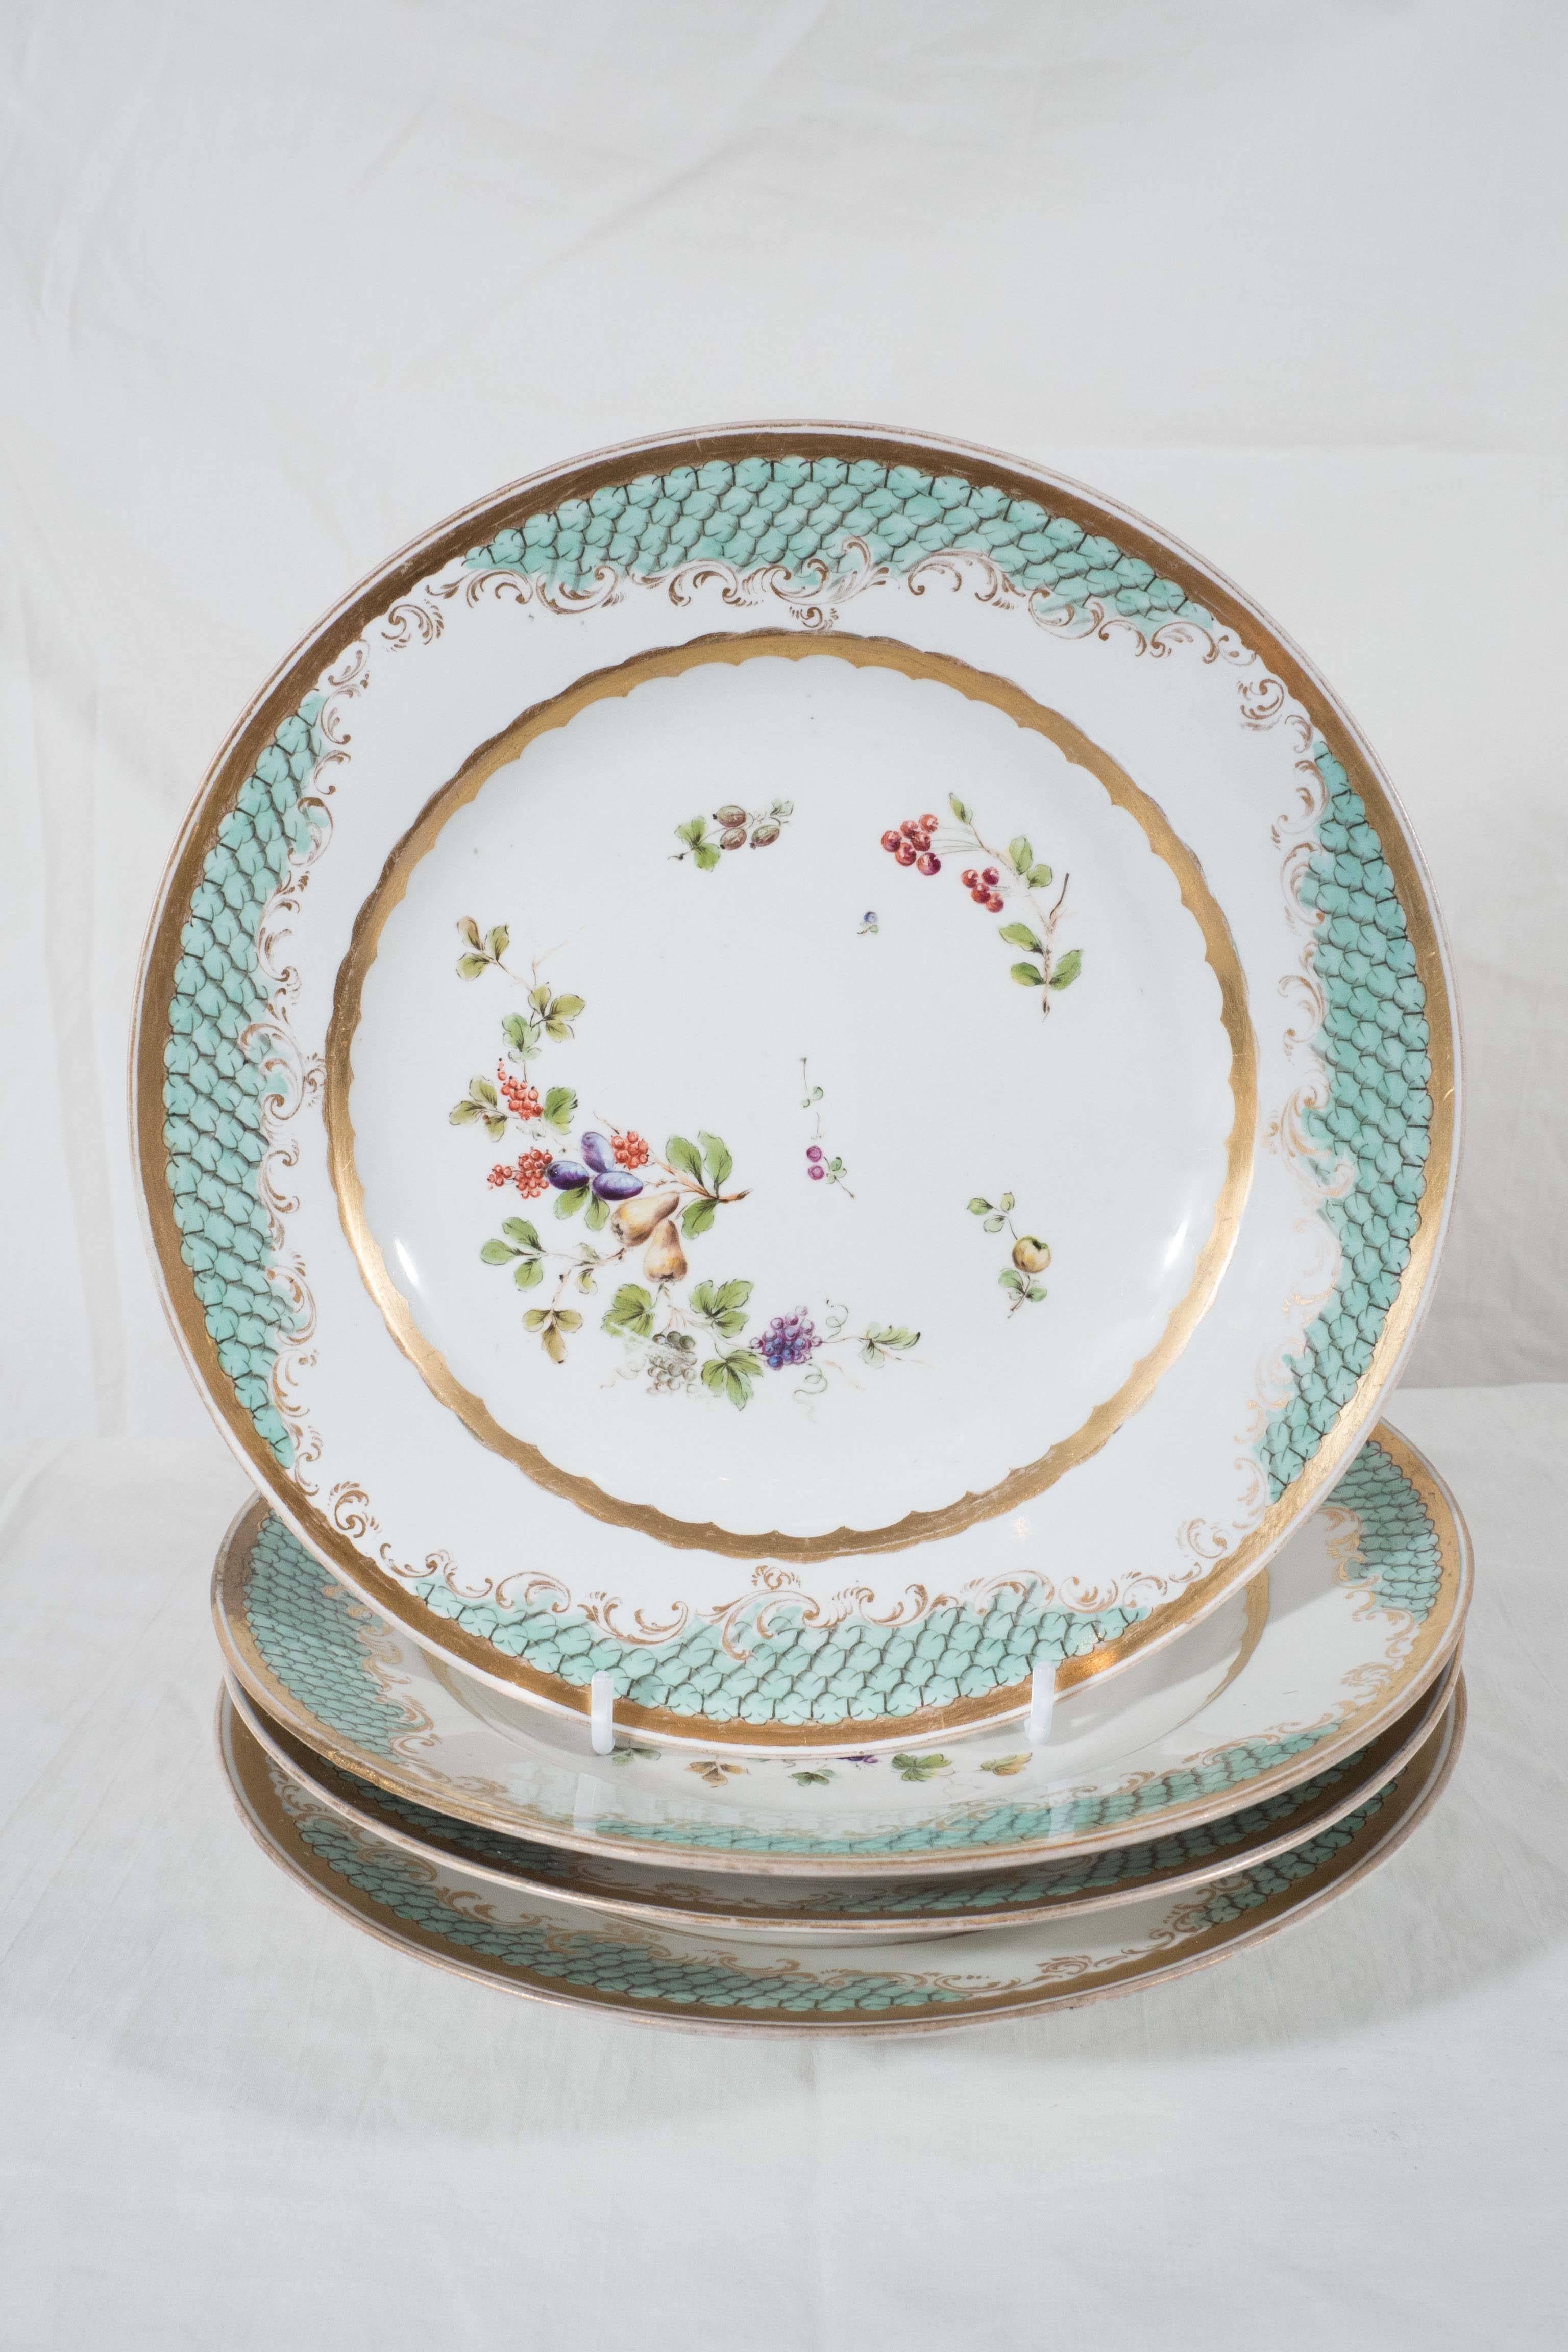 Romantic Antique Porcelain Dishes, a Set of 11 Imperial Vienna Porcelain Plates